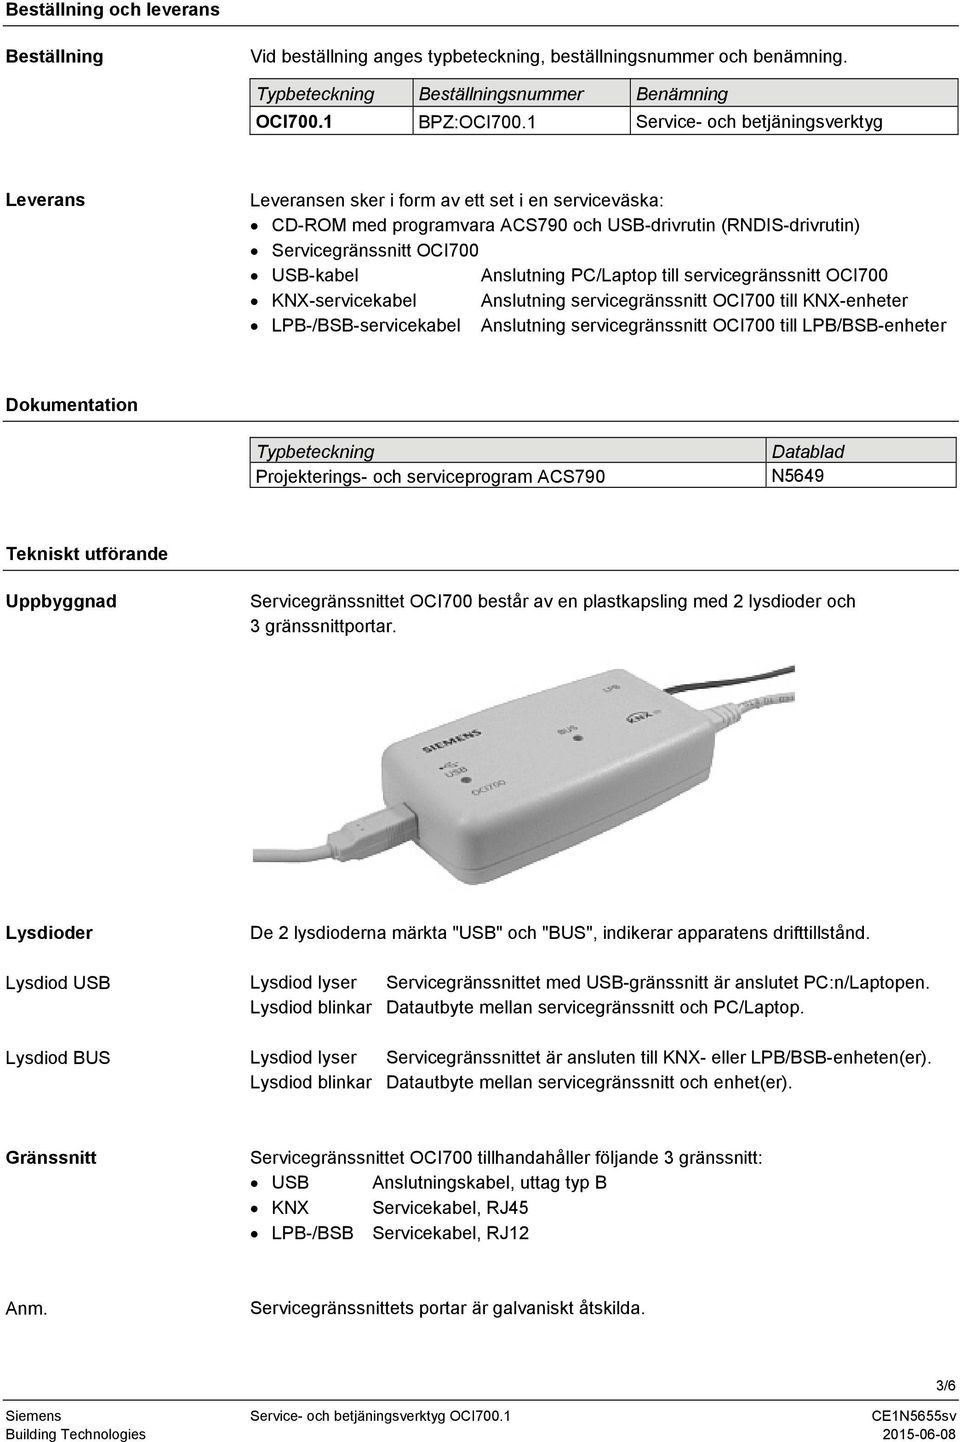 Anslutning PC/Laptop till servicegränssnitt OCI700 KNX-servicekabel Anslutning servicegränssnitt OCI700 till KNX-enheter LPB-/BSB-servicekabel Anslutning servicegränssnitt OCI700 till LPB/BSB-enheter